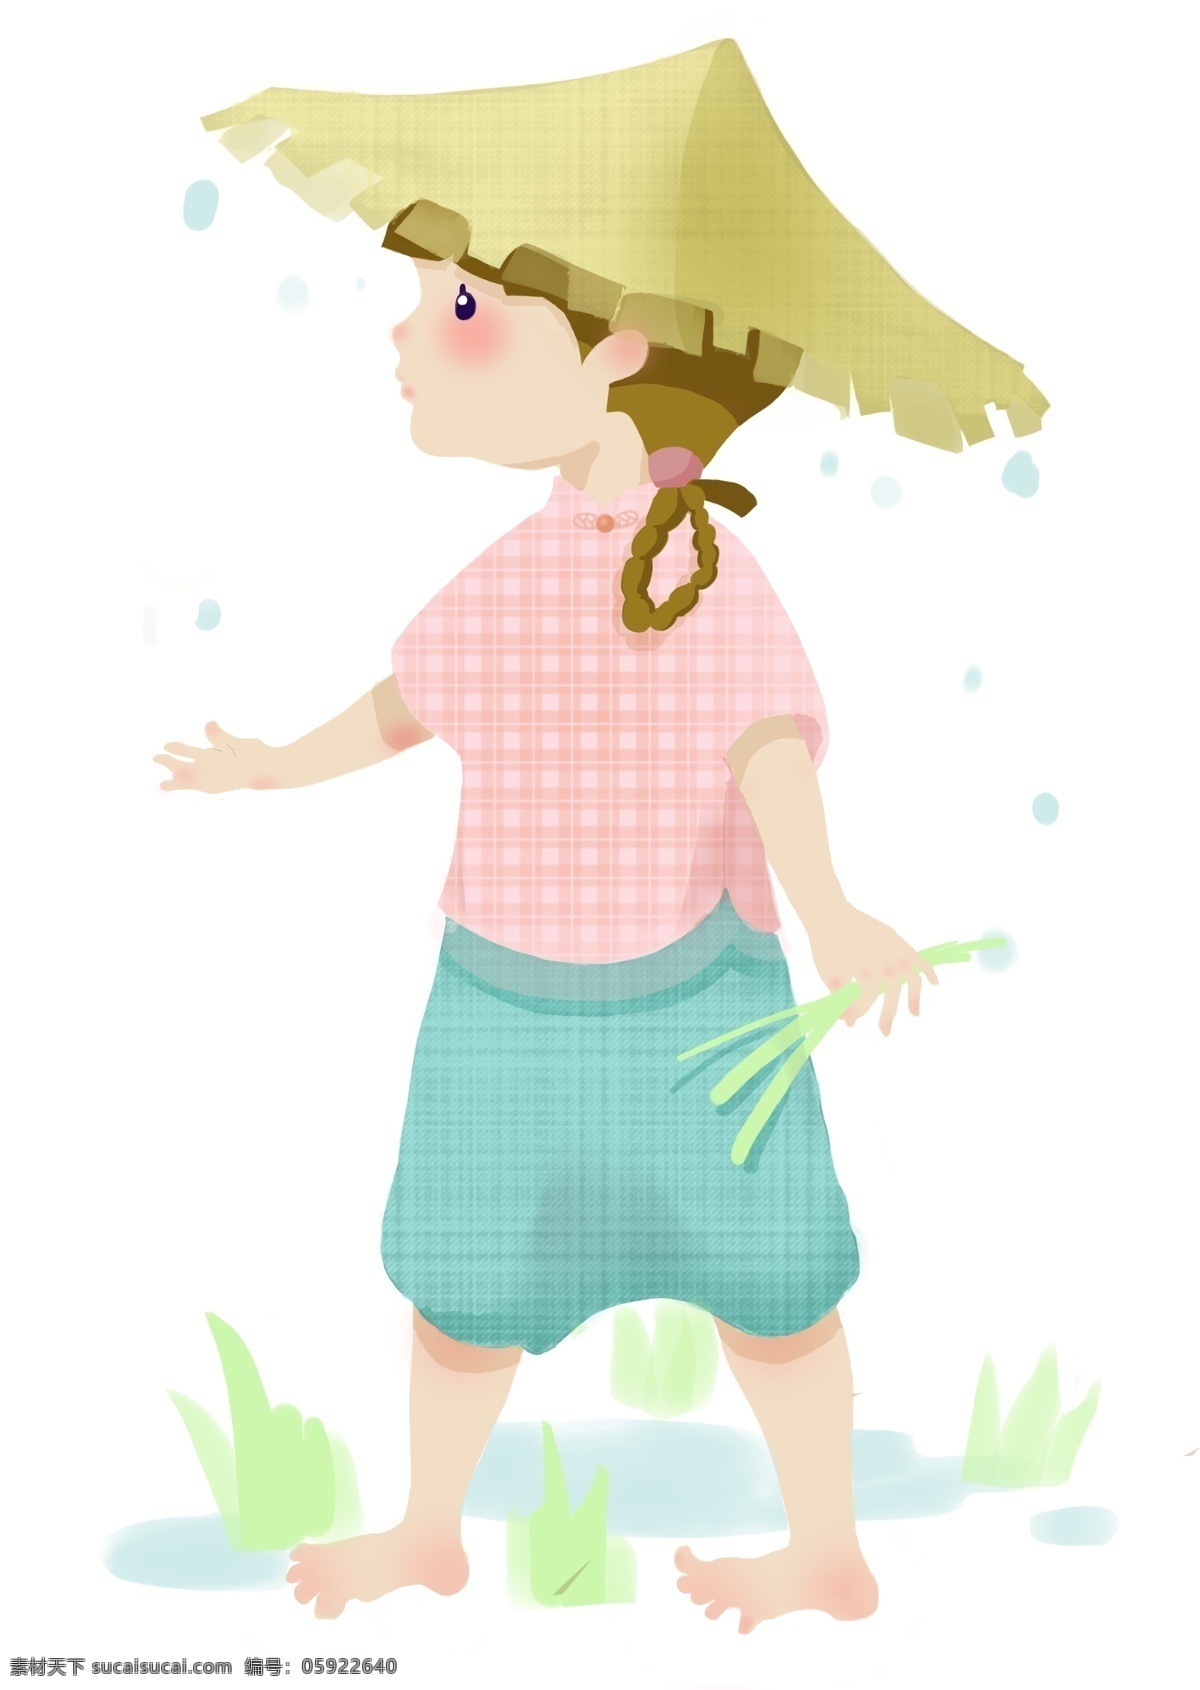 谷雨 拔草 小女孩 拔草的小女孩 插画 戴斗笠的女孩 站着的女孩 淋雨 下雨 春雨 雨滴 草帽